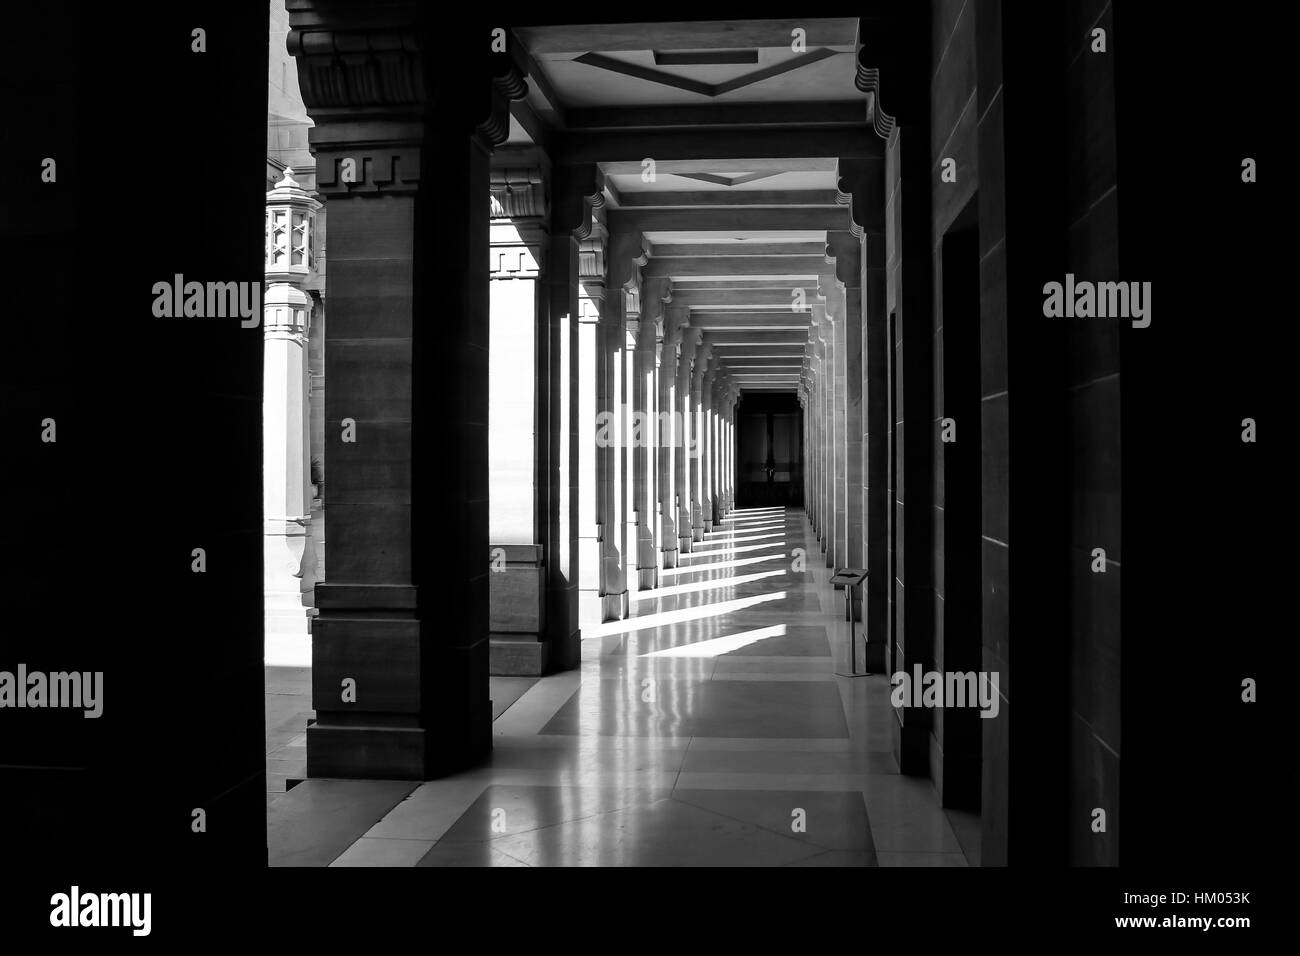 Die Dichotomie von Licht und Schatten in einem verlassenen Korridor des Palastes, in Rajasthan dargestellt. Stockfoto